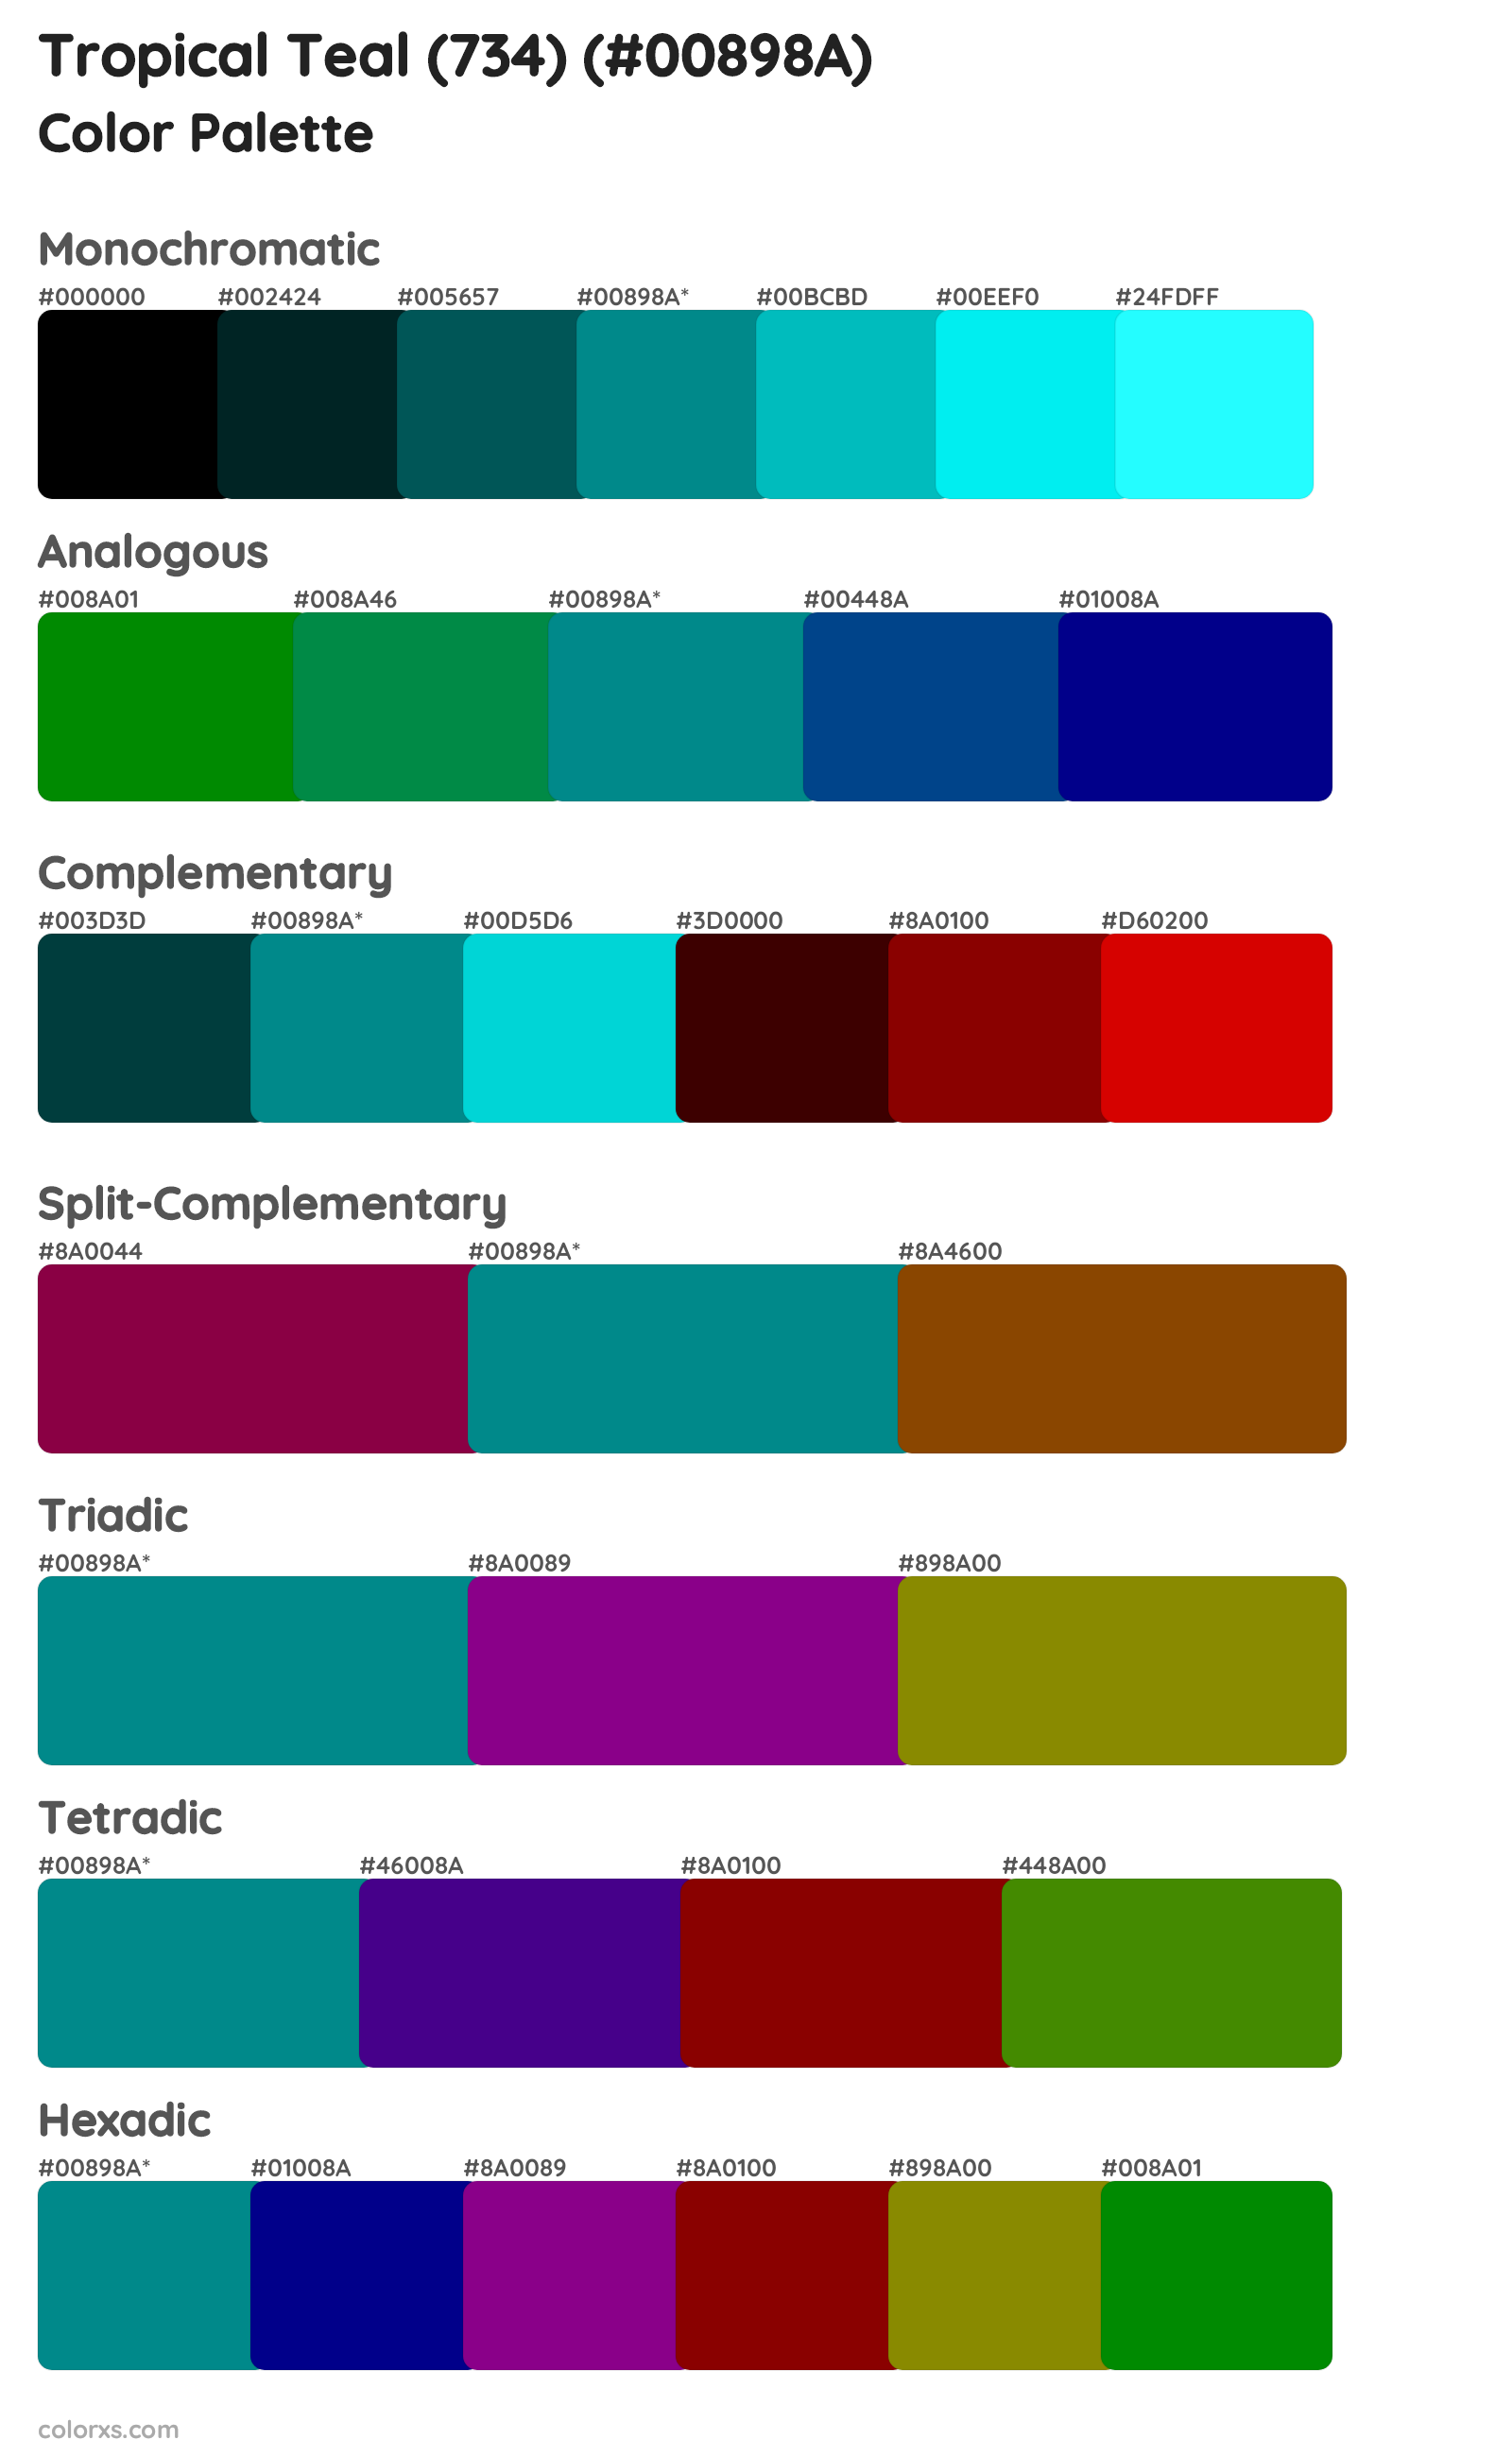 Tropical Teal (734) Color Scheme Palettes